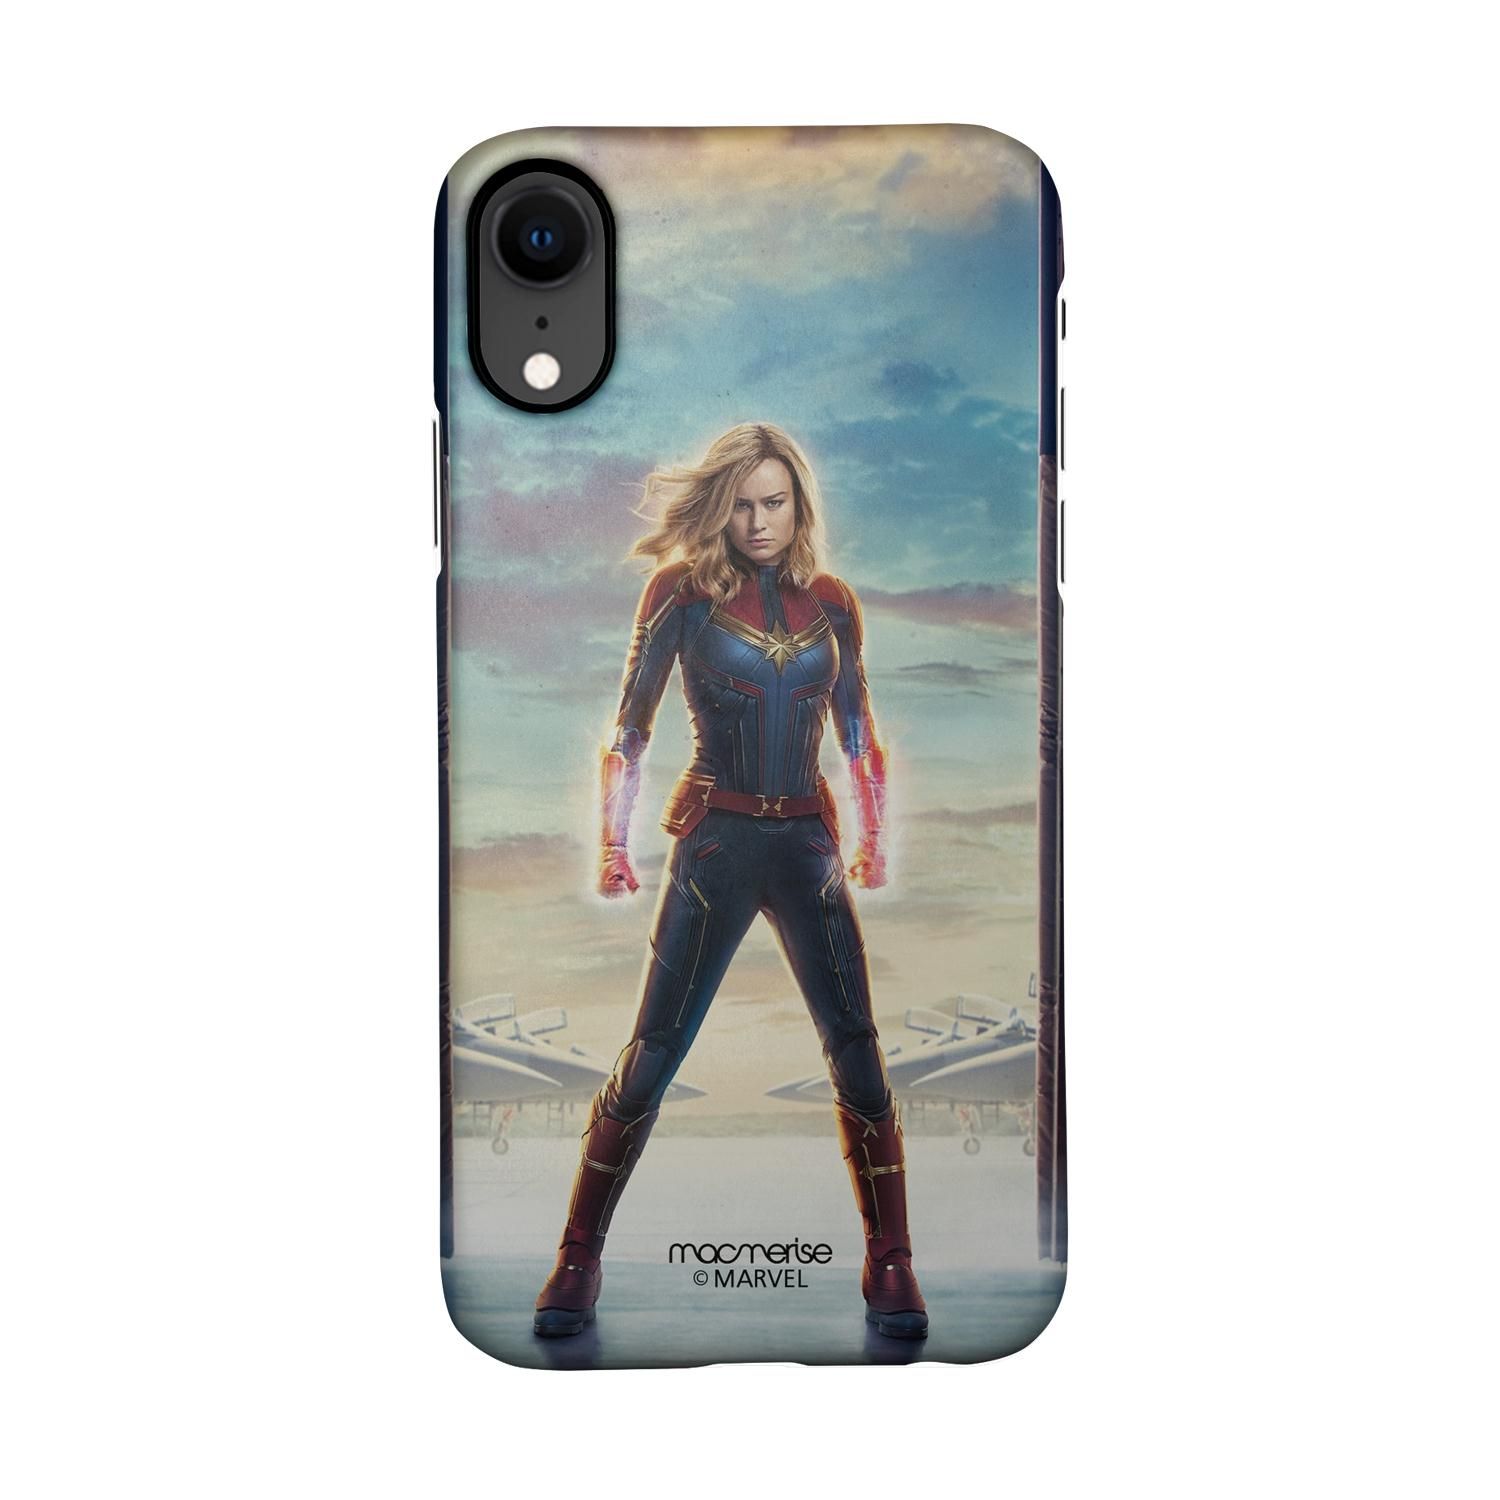 Buy Captain Marvel Poster - Sleek Phone Case for iPhone XR Online